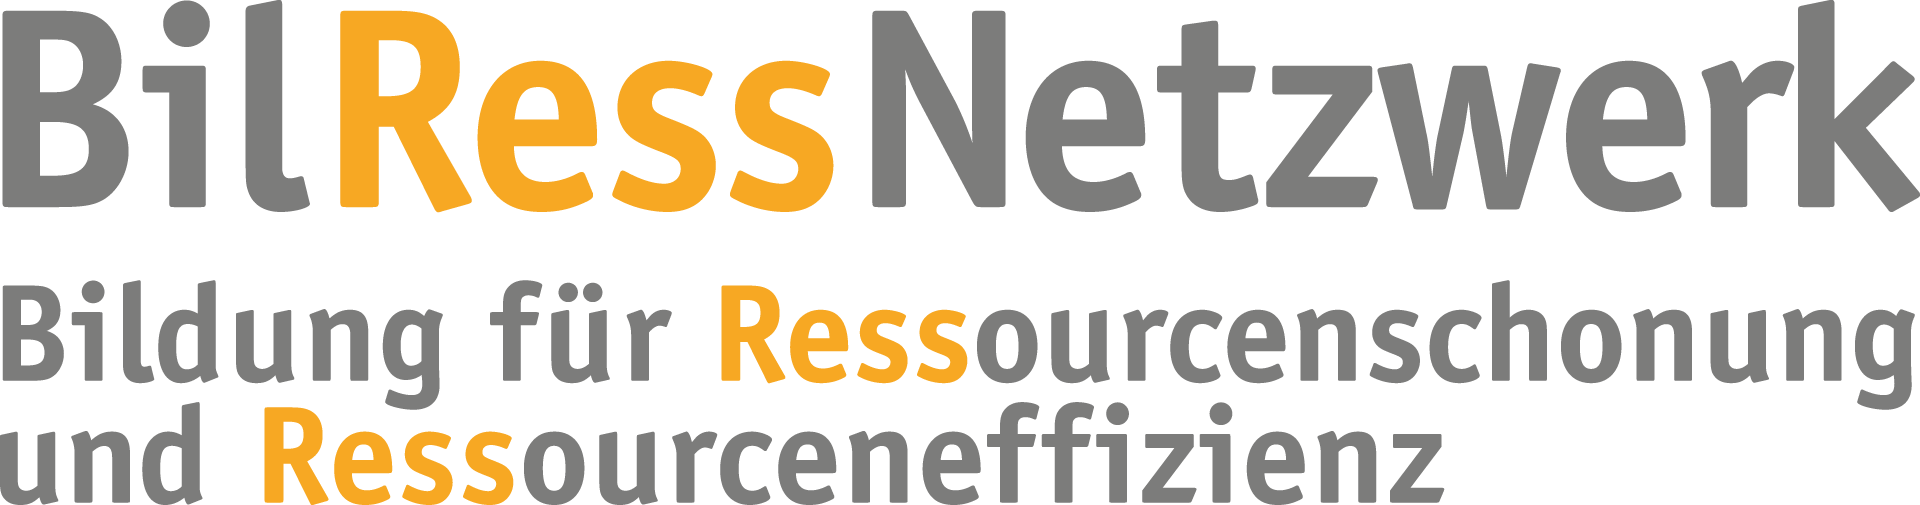 Logo des BilRessNetzwerk